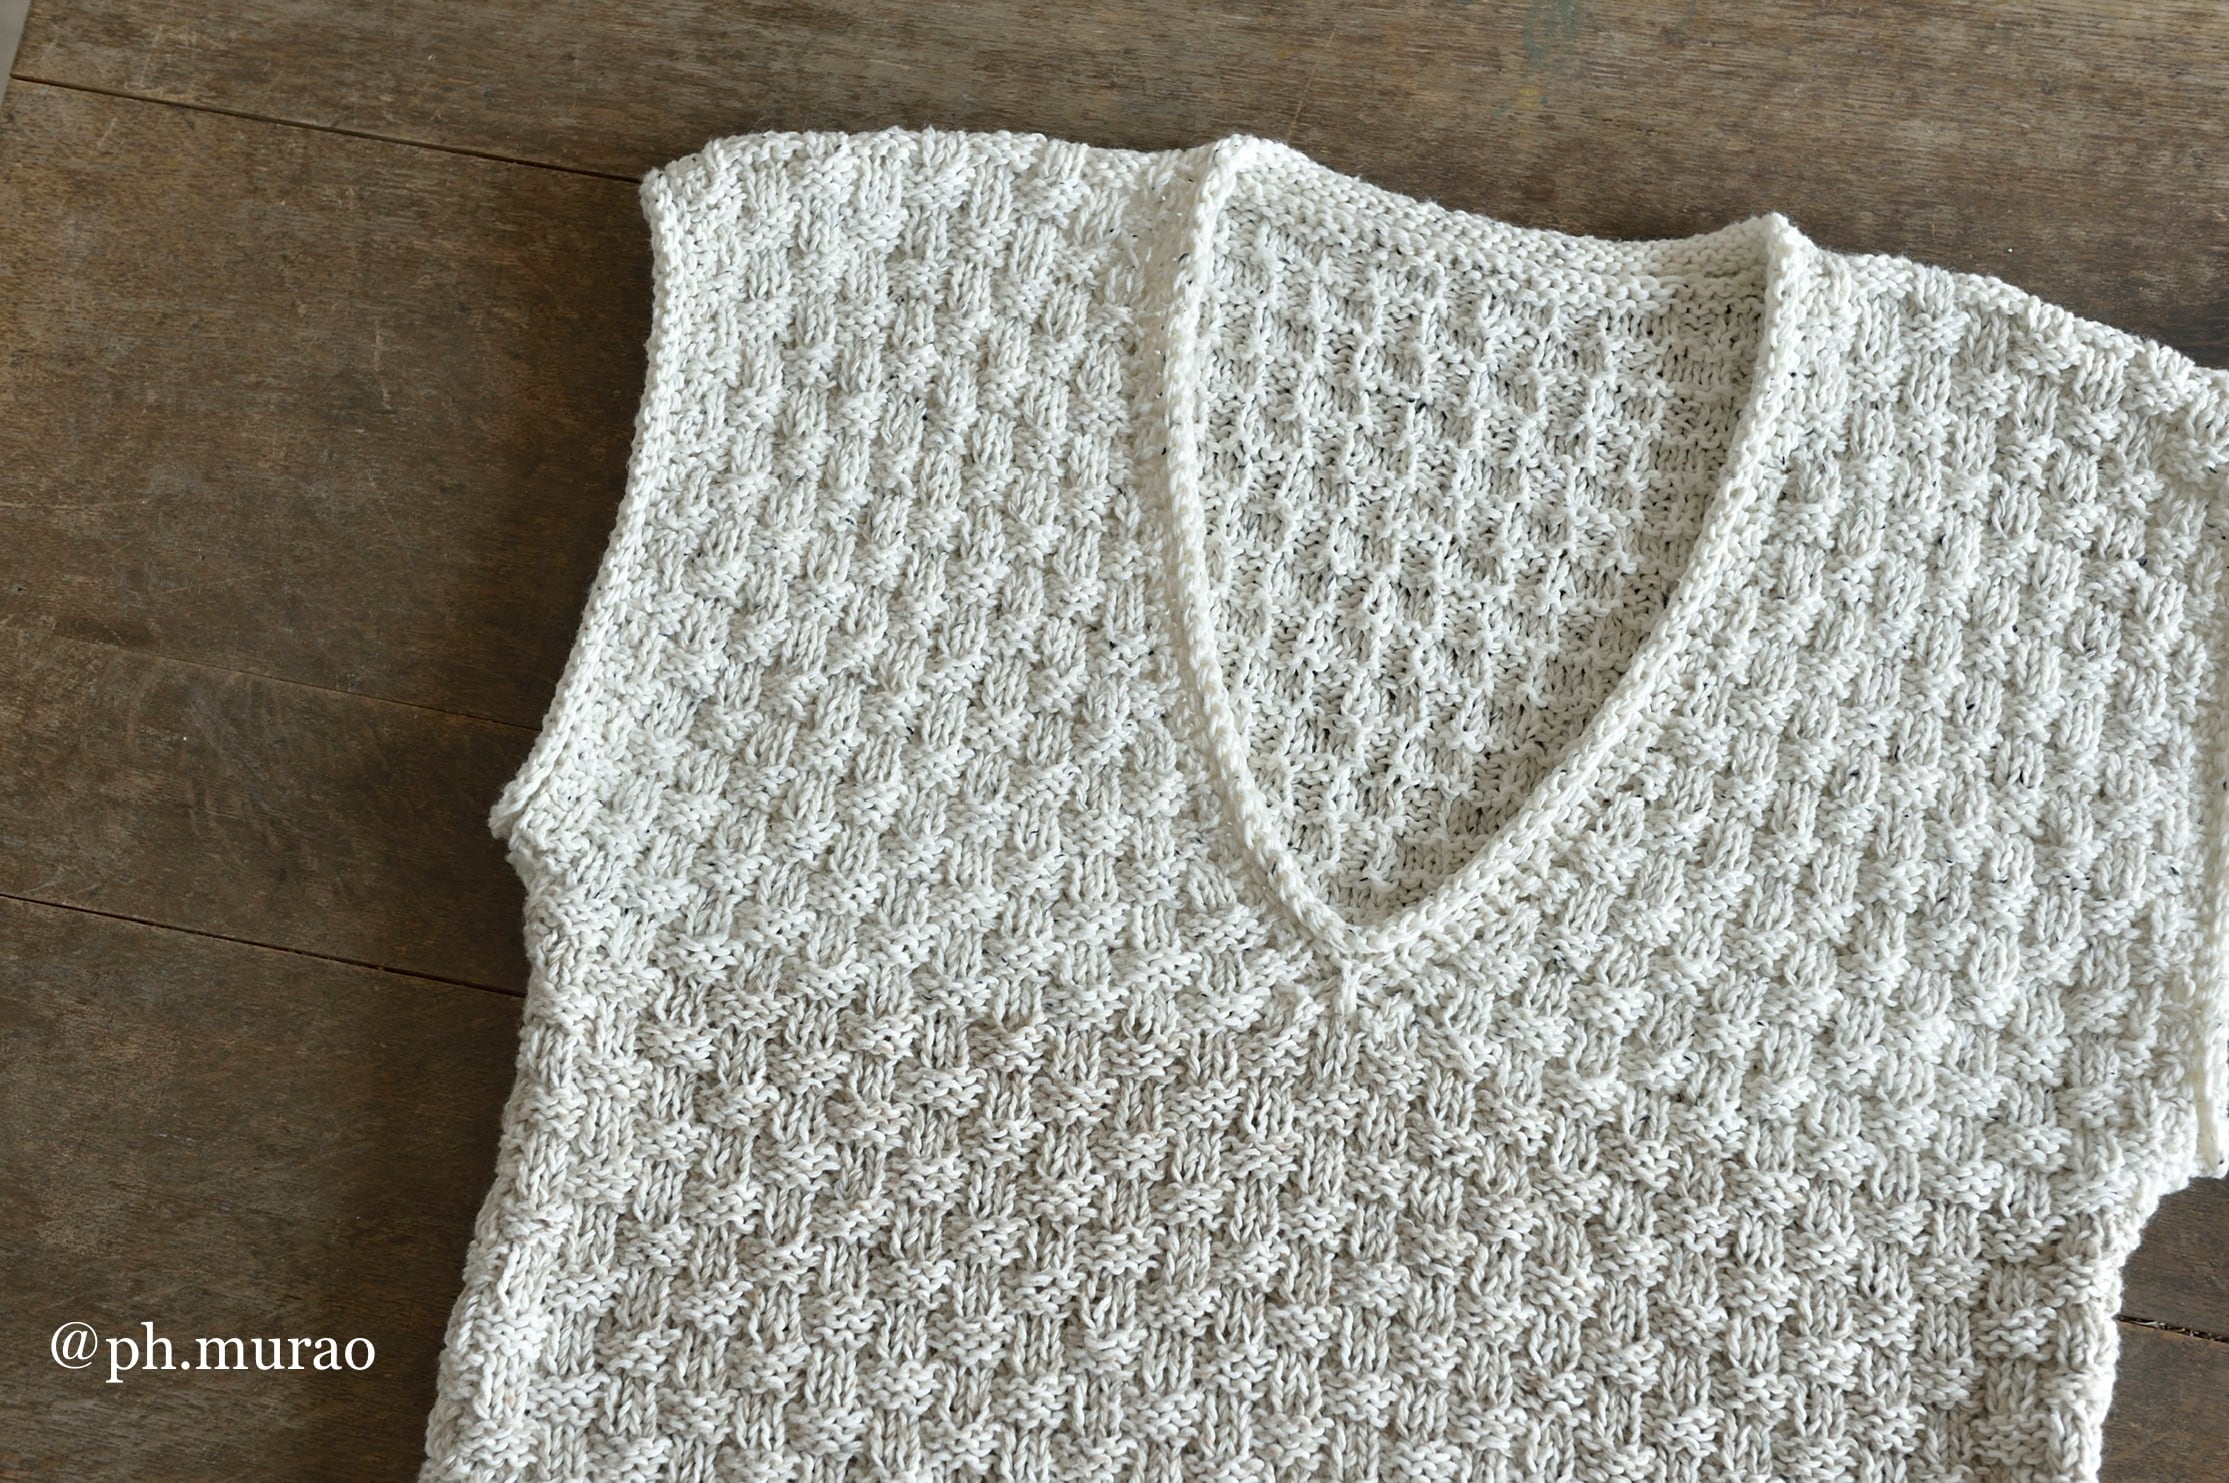 編み物キット | 60ろくまる編み物キット販売サイト | 世界が認めた毛糸